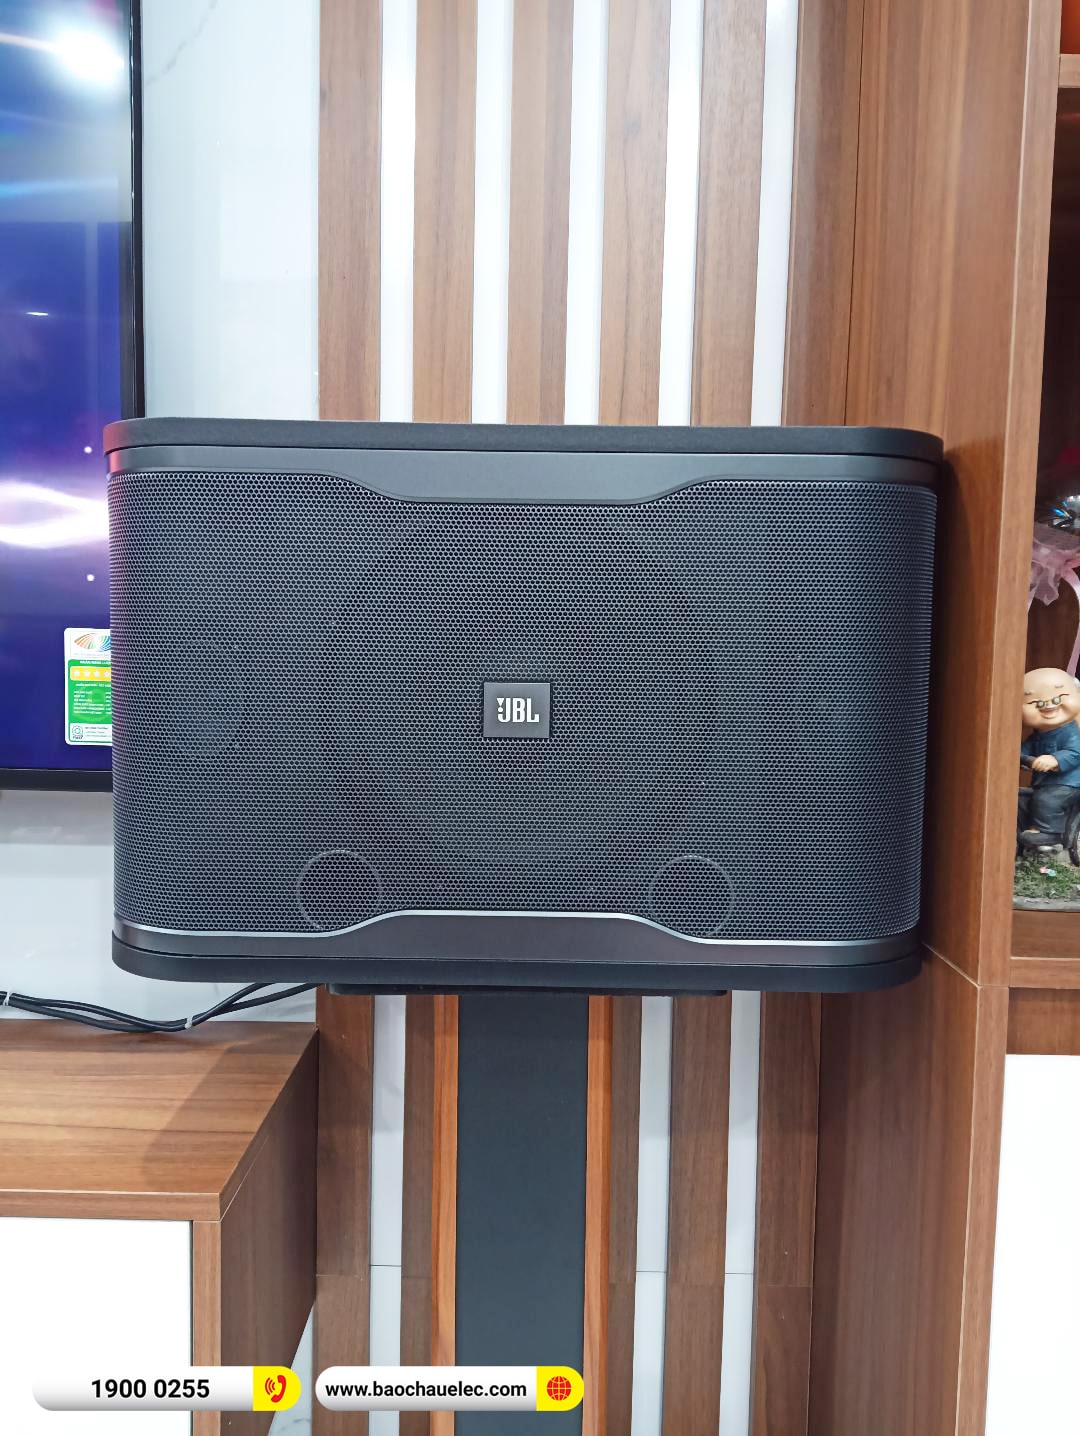 Lắp đặt dàn karaoke JBL hơn 21tr cho anh Đông tại Hà Nội (JBL RM210, KX180A, BIK BJ-U100) 